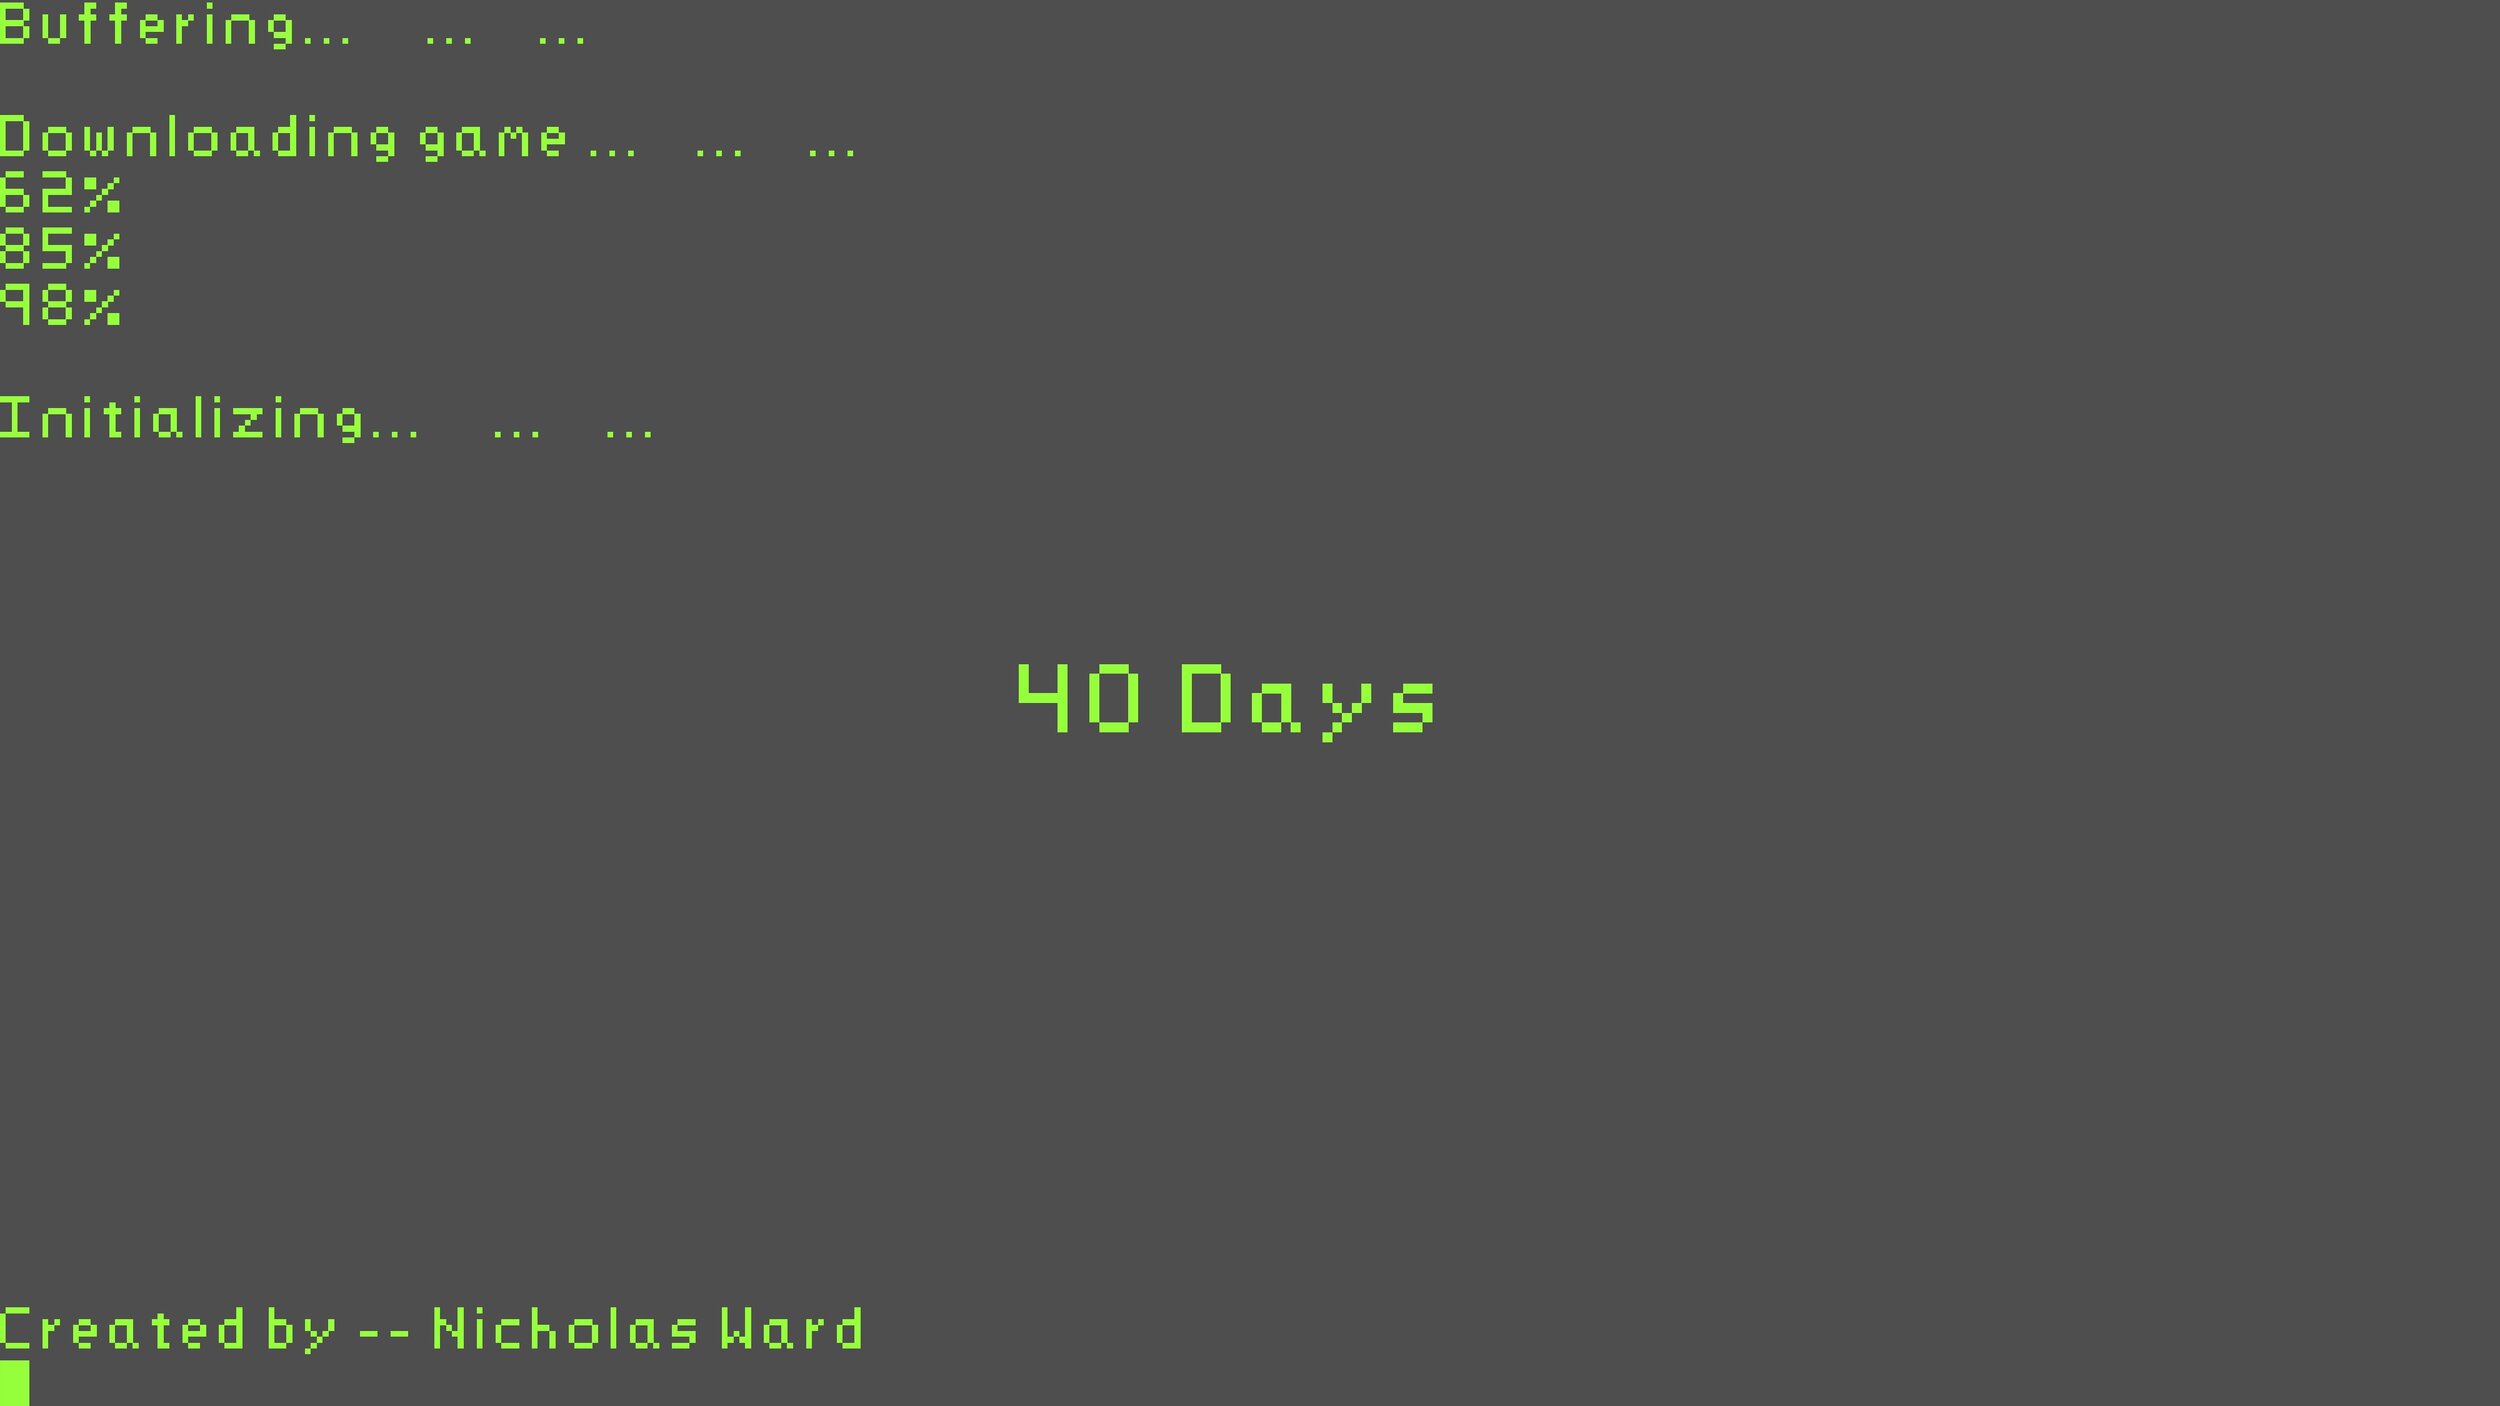 40 Days_Nicholas Ward copy.jpg